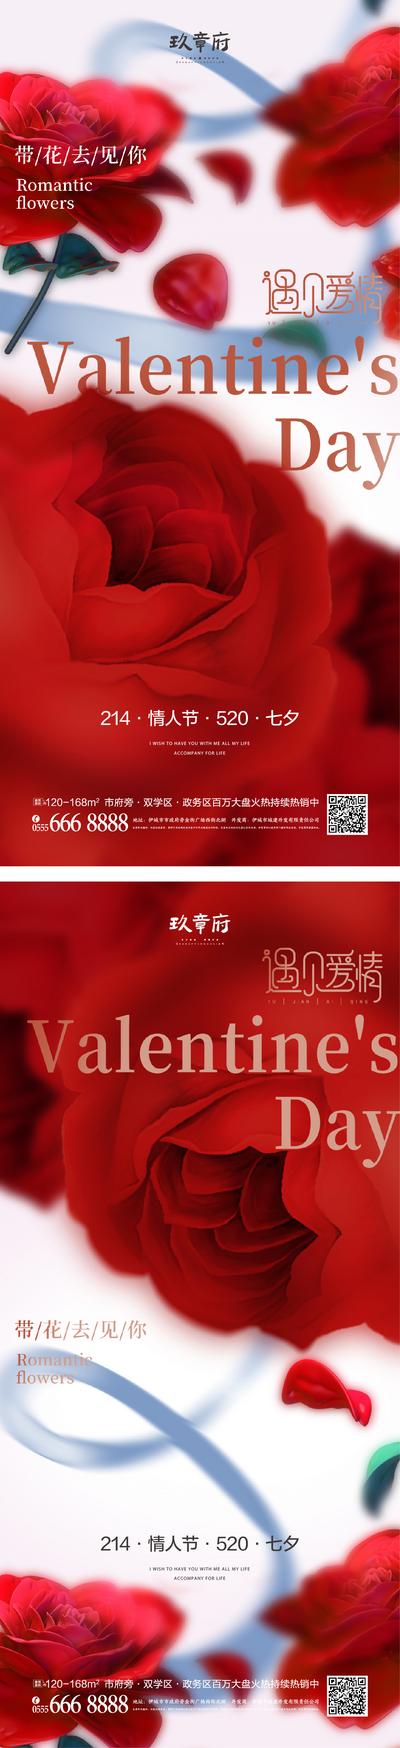 南门网 海报 公历节日 房地产 情人节 214 玫瑰花 520 七夕节 爱情 系列